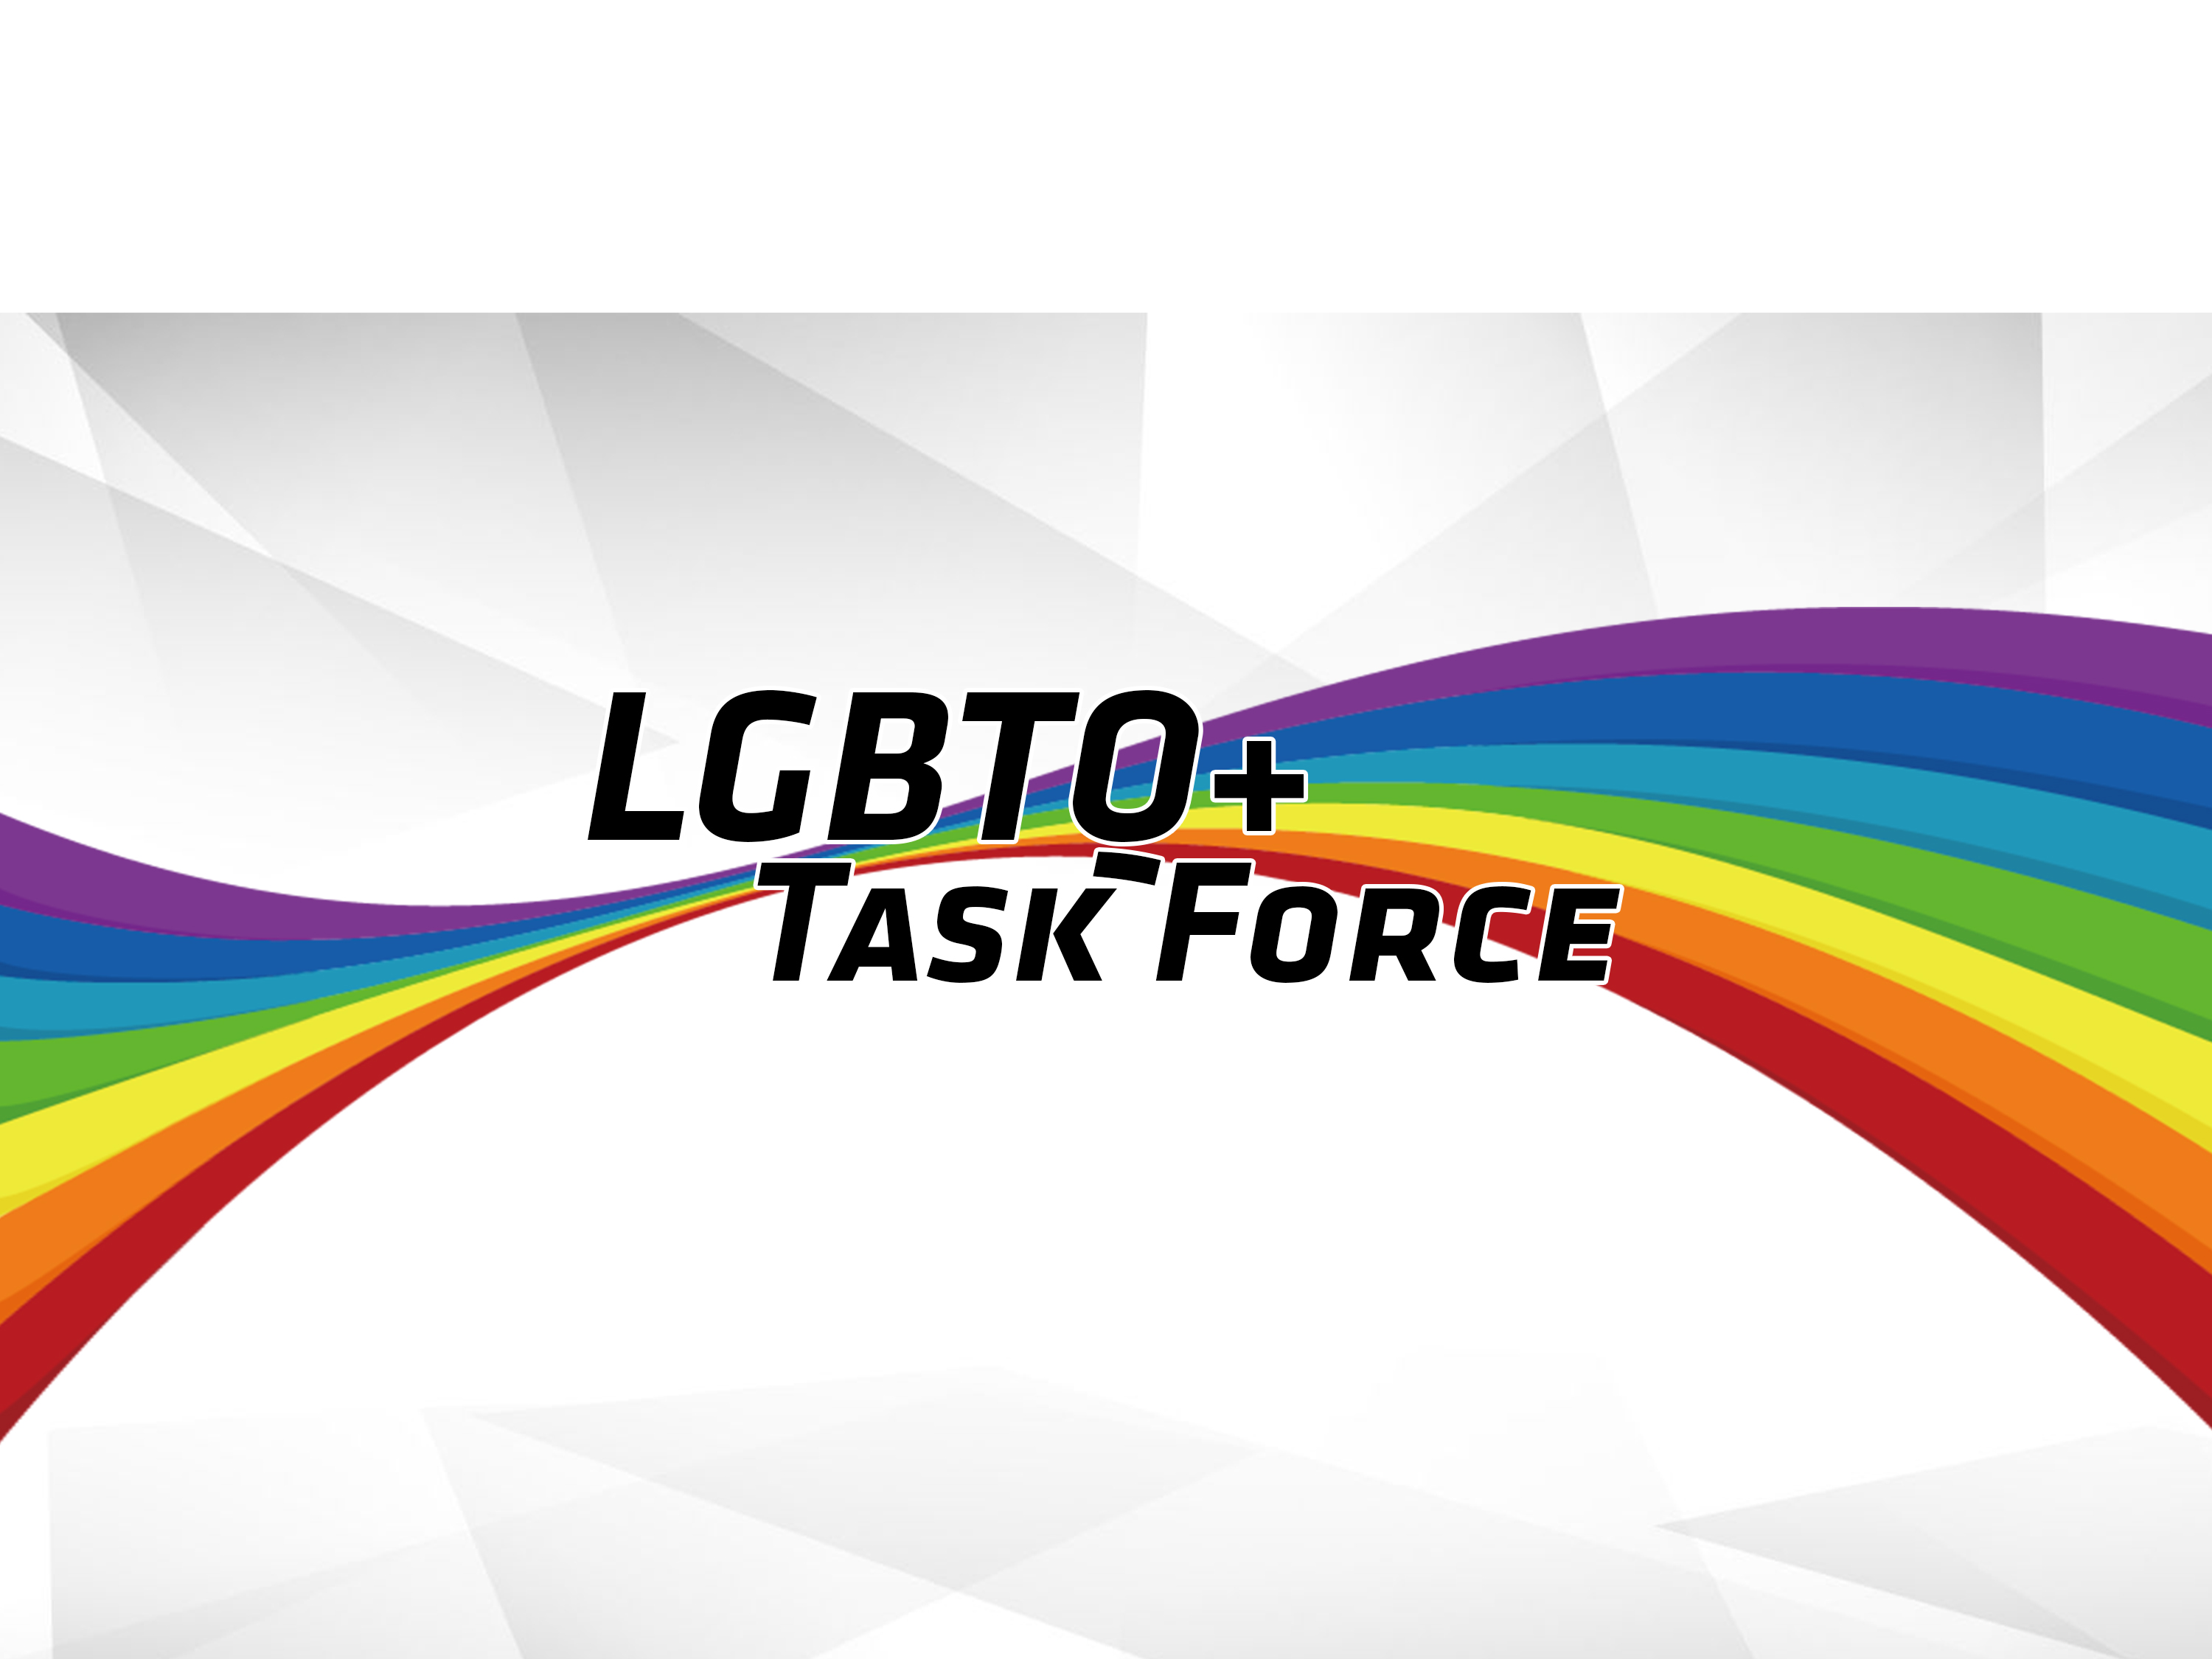 LGBTQ+ Task Force